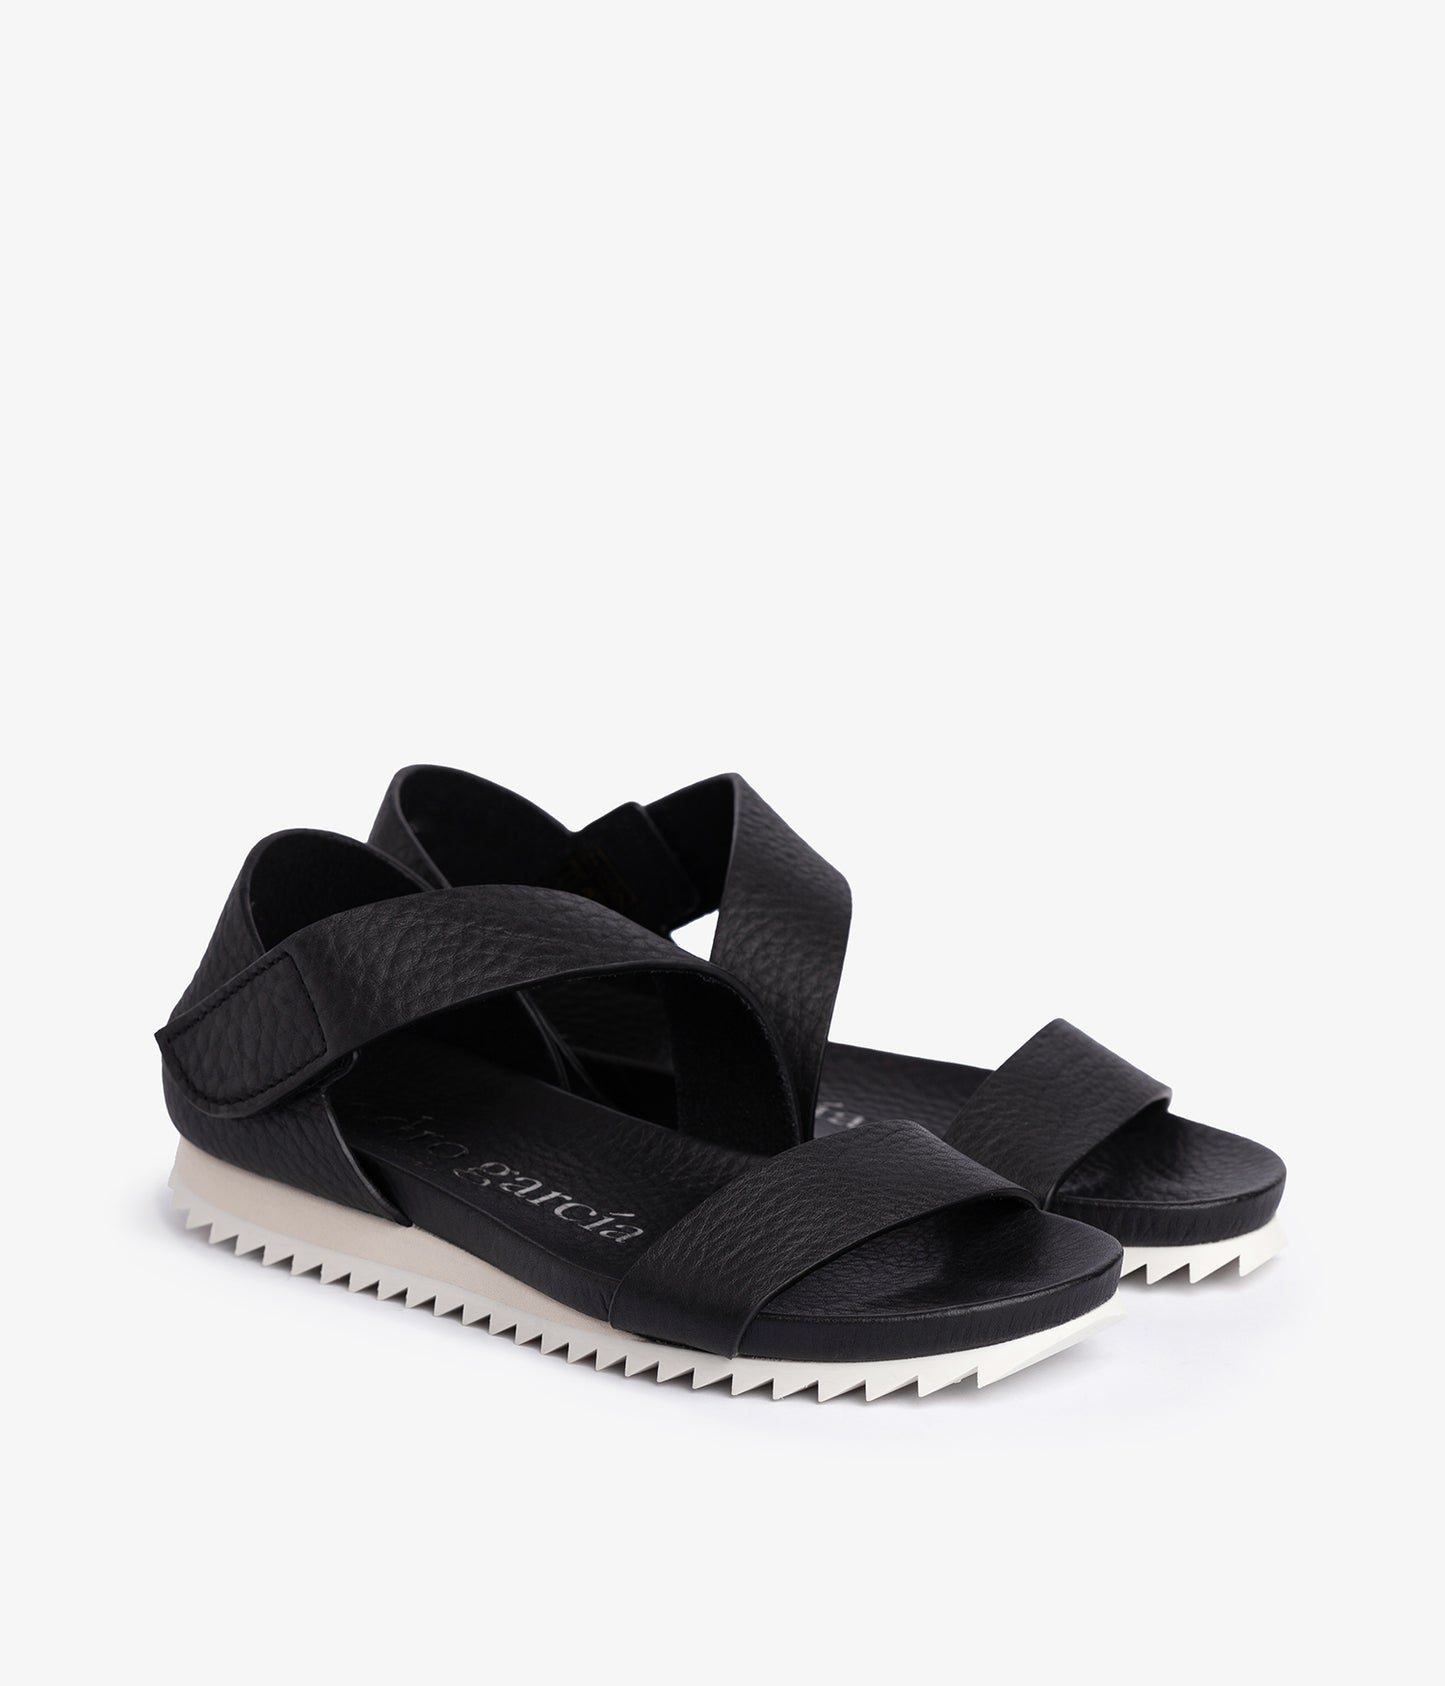 pedro garcia asymmetrical sportif sandal black jedda 2